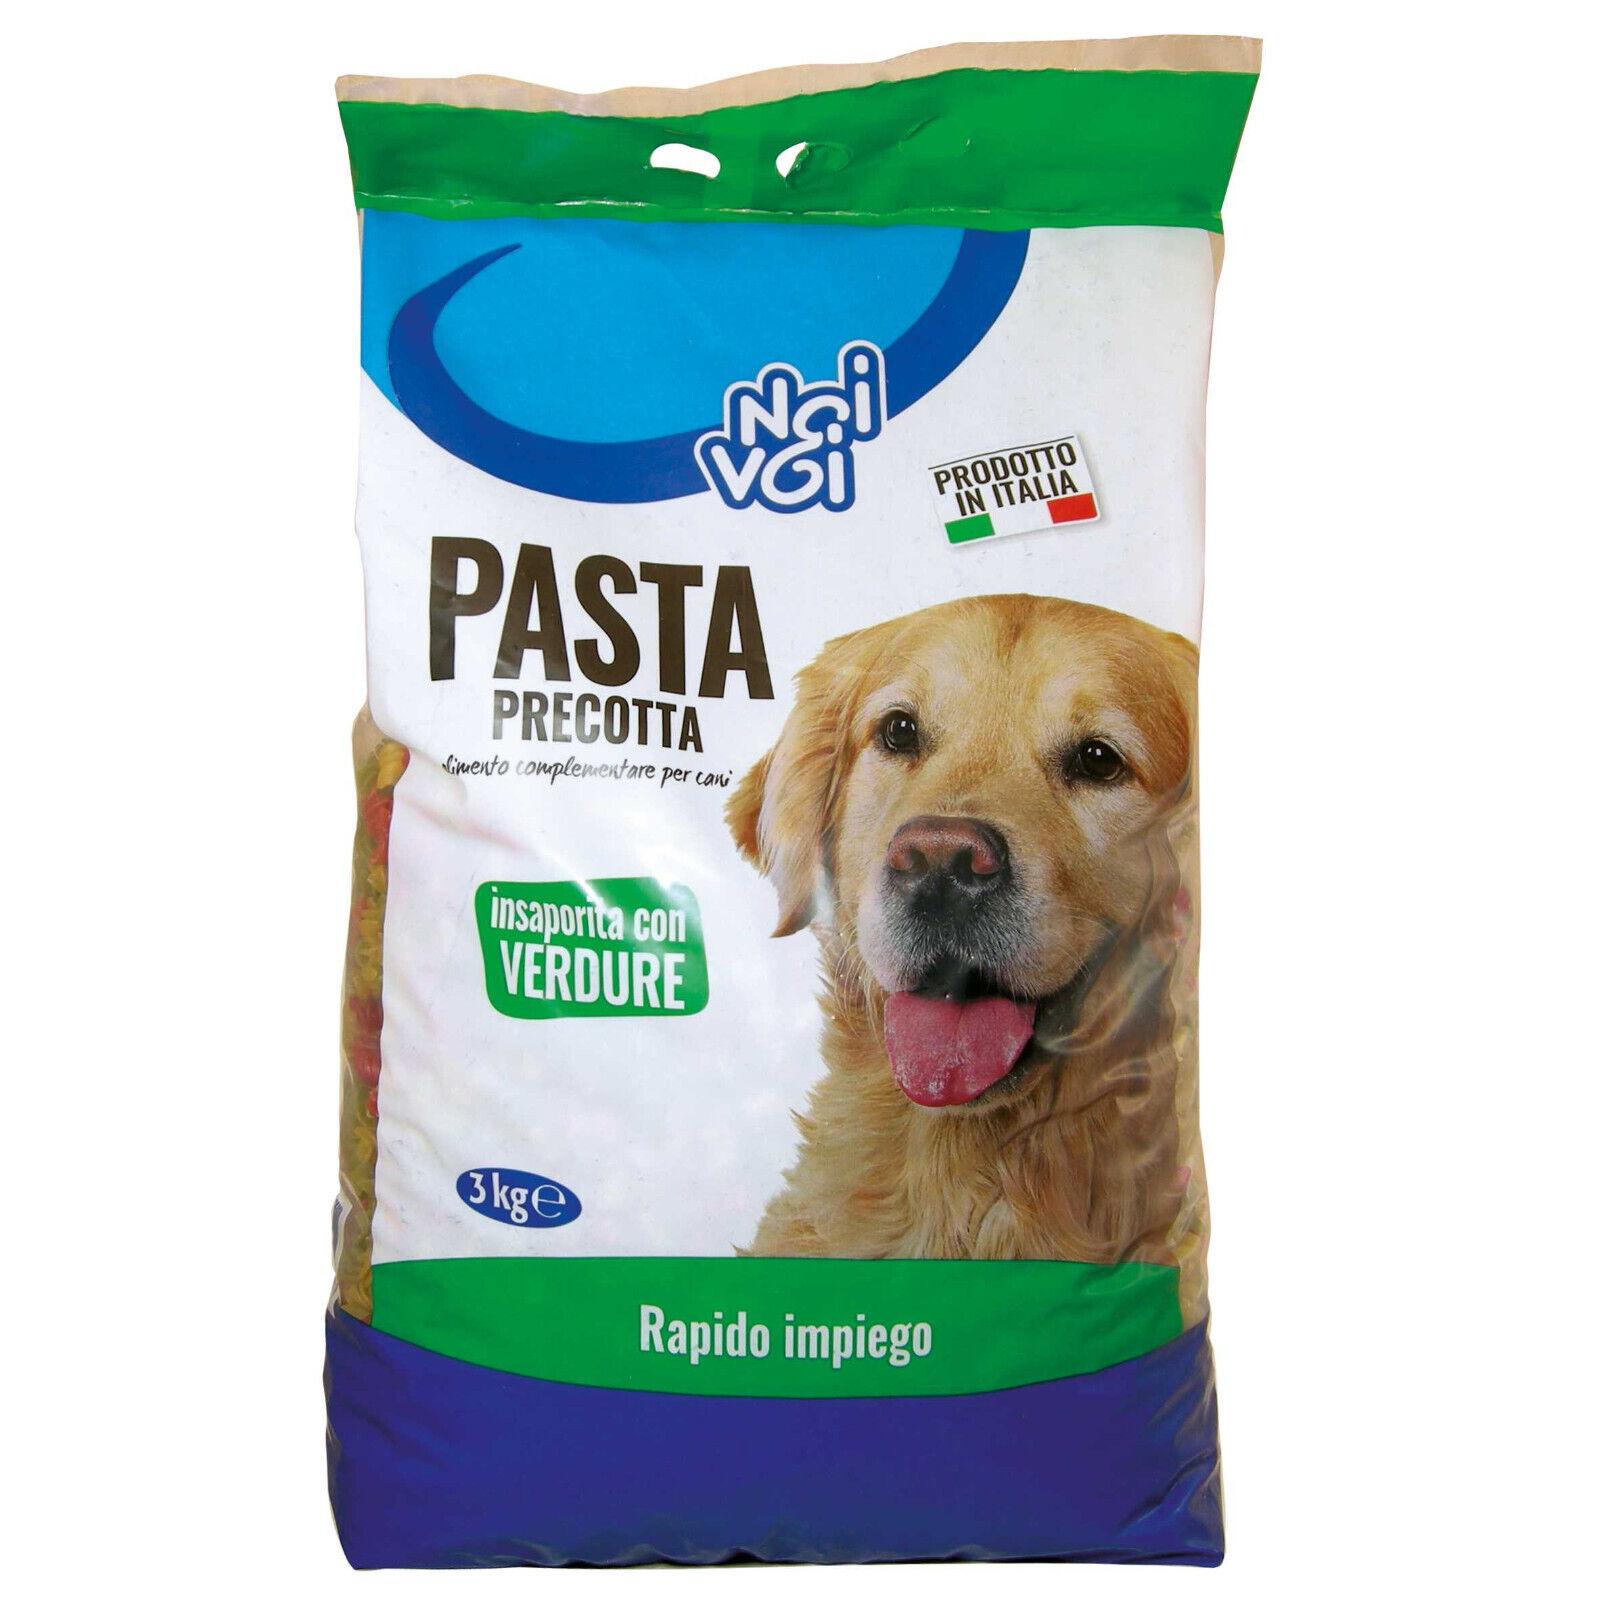 Pasta Precotta NoiVoi per Cani Insaporita con verdure - Confezione da 3 Kg.